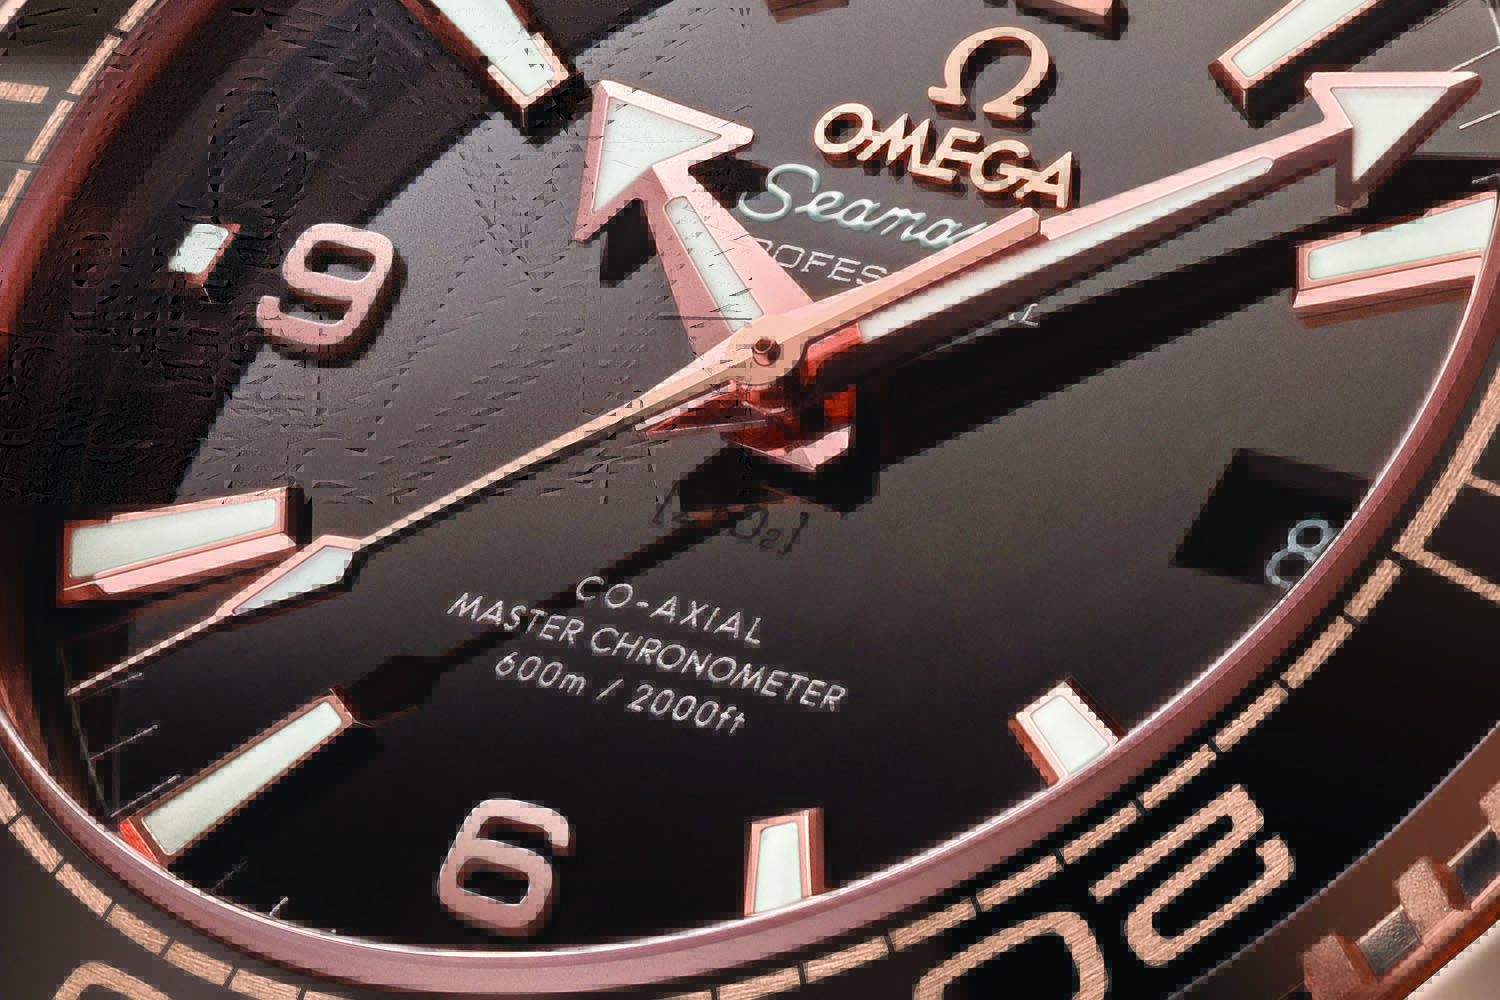 Omega Seamaster Planet Ocean 600m Master Chronometer 39.5mm Sedna Gold brown dial - baselworld 2016 - ref. 215.63.40.20.13.001